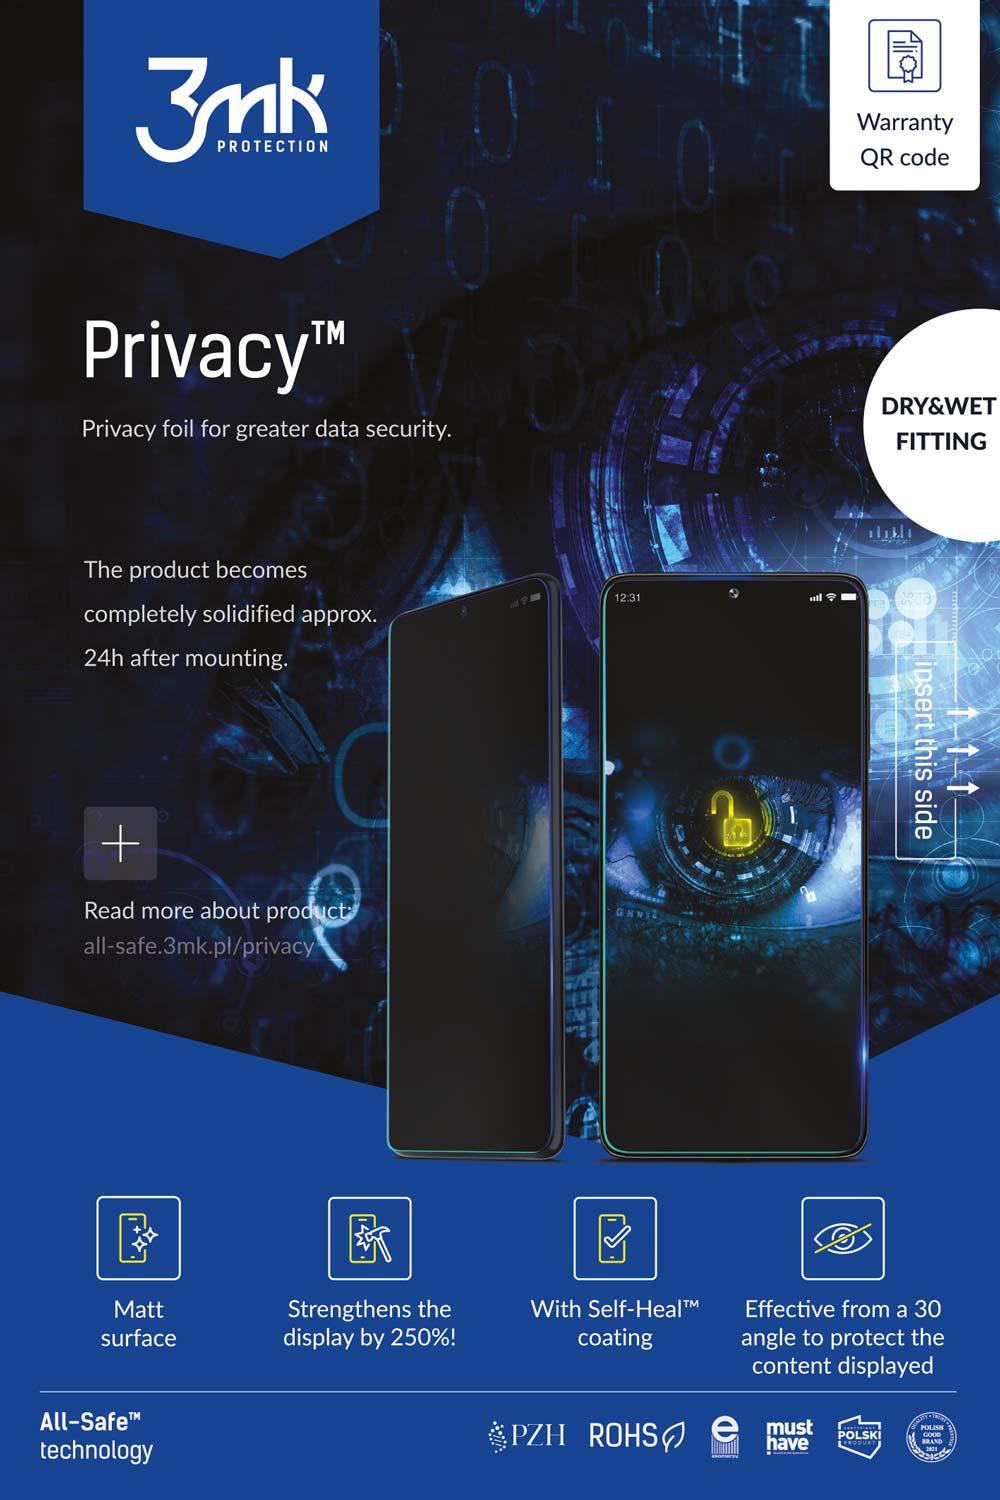 3MK Ochranná fólie all-safe AIO - Privacy Phone Dry & Wet 5ks - kompatibilní POUZE s novým plotrem